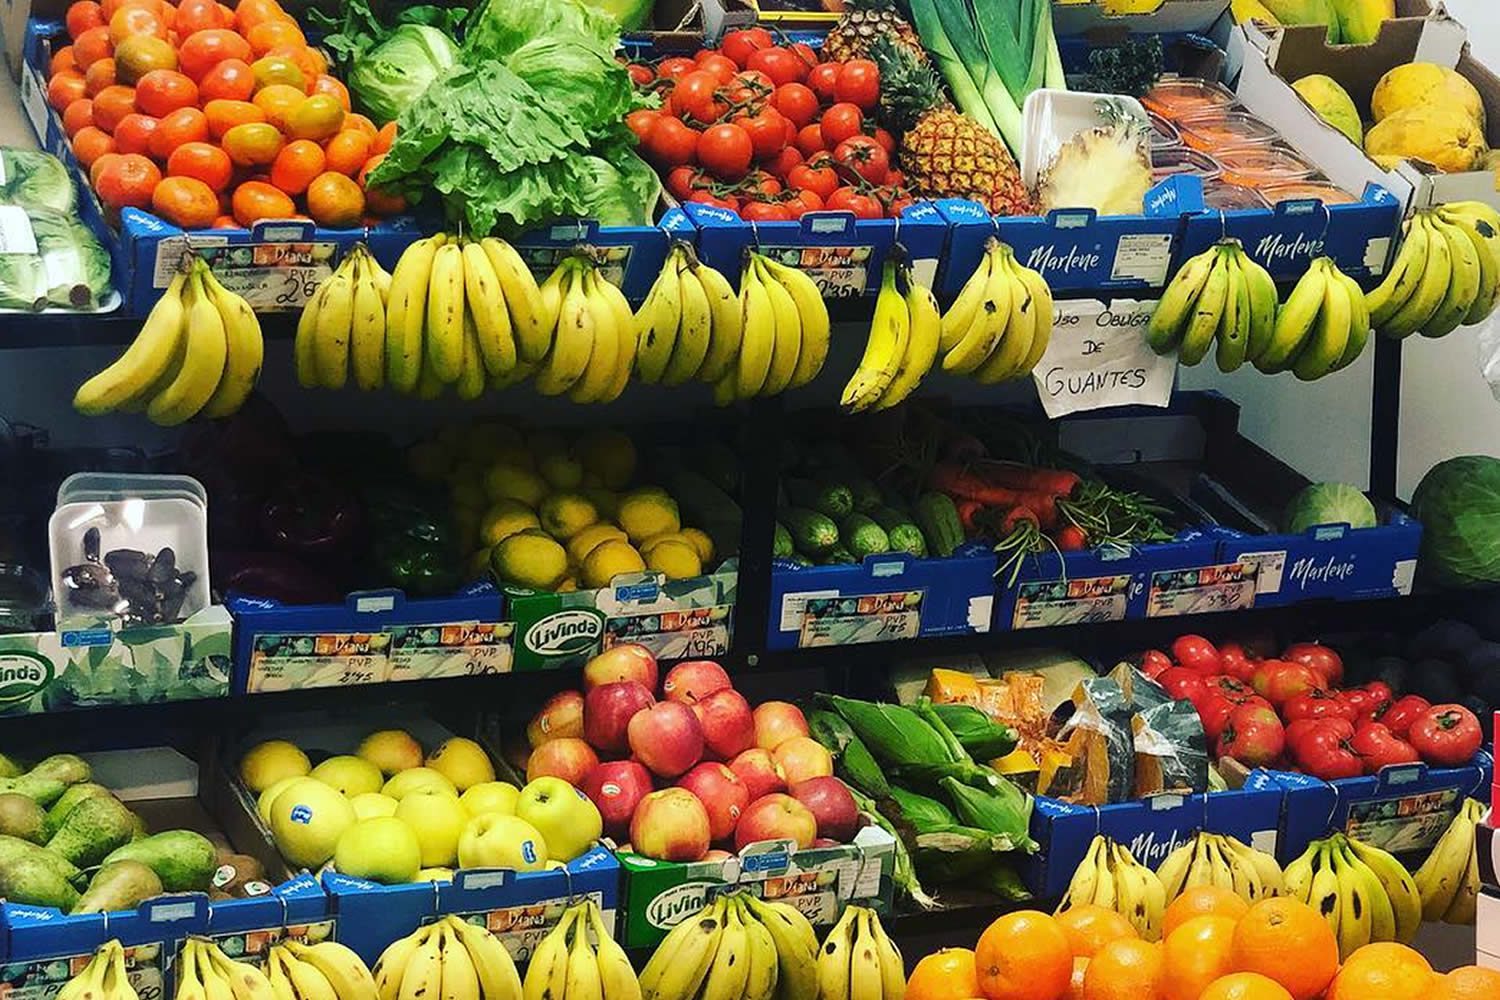 Bazar Frutería La Diana en Agaete, supermarket, fruits, avocado, watermelon, bananas, apples, mango